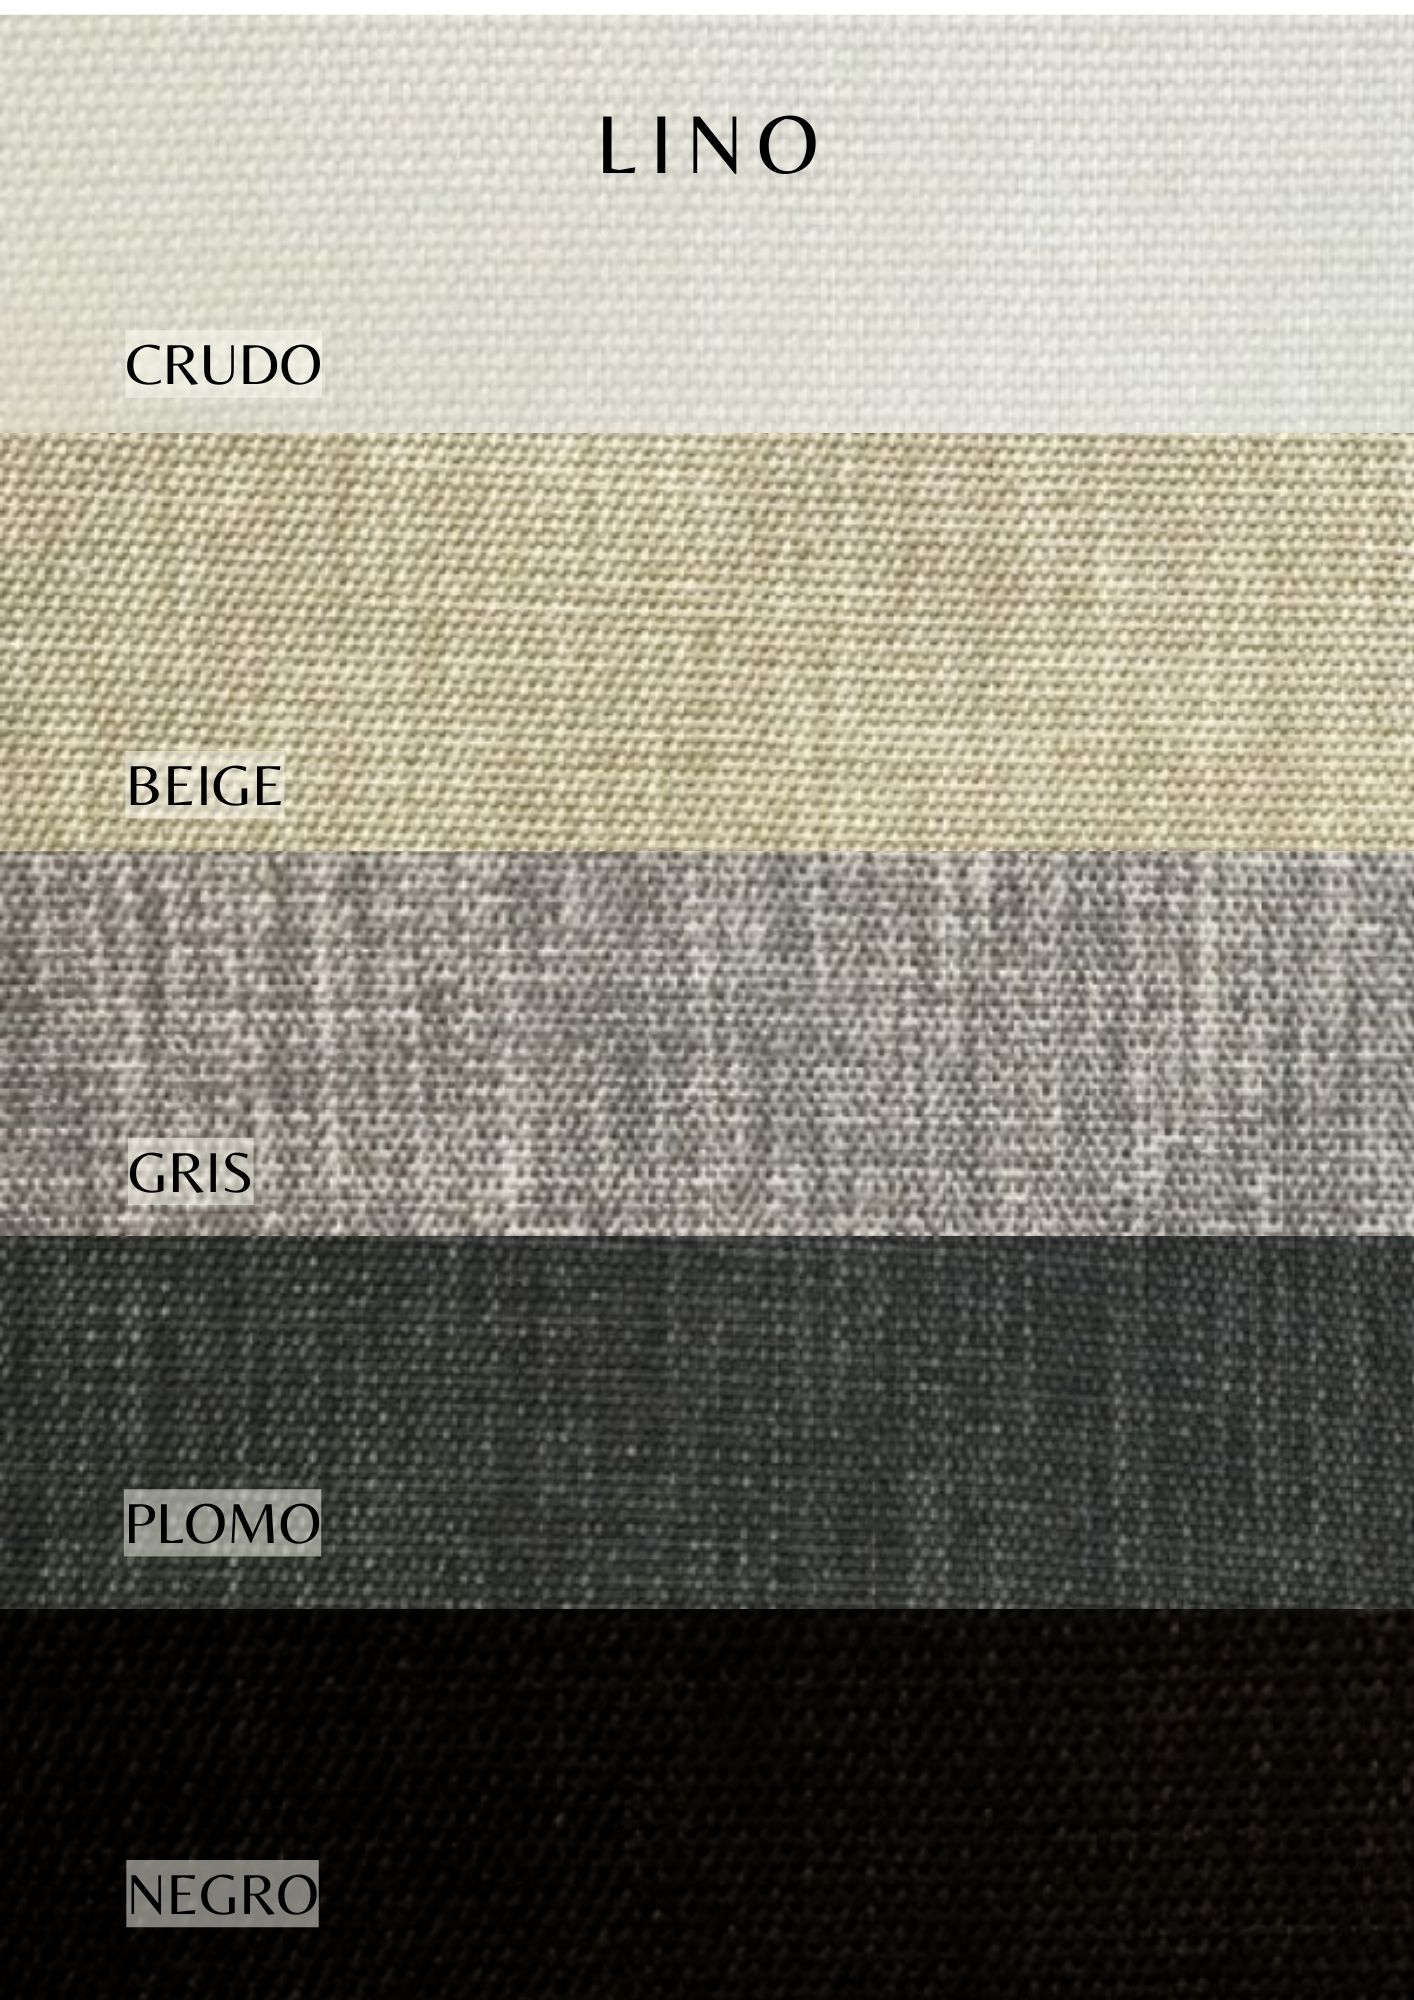 telas interior catalogo colores (3)